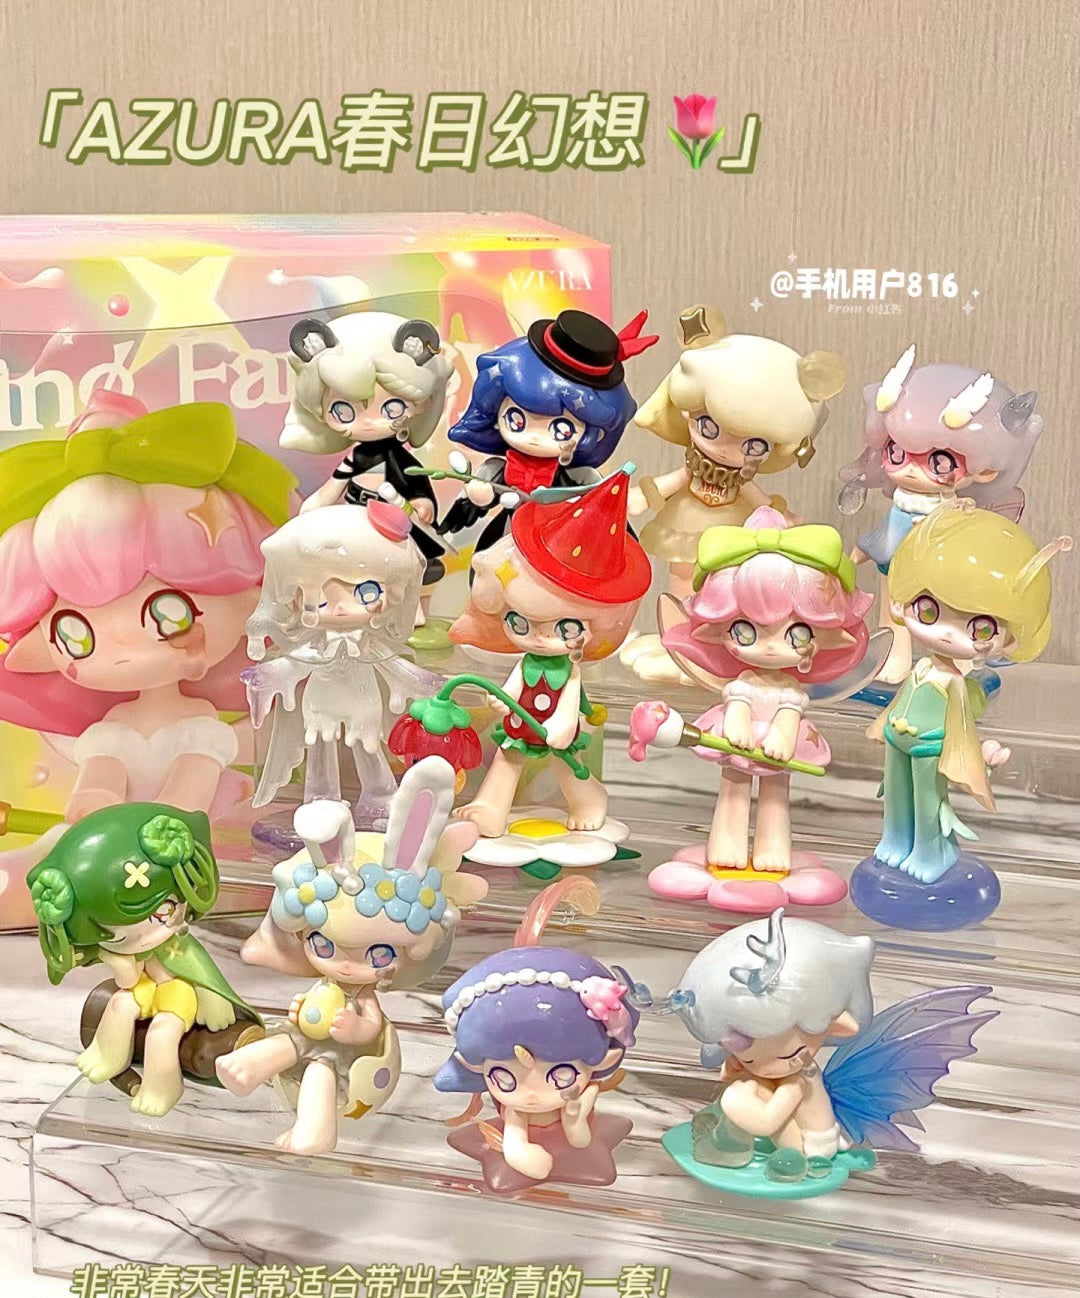 (Popmart) Azura spring fantasy cute series DIY